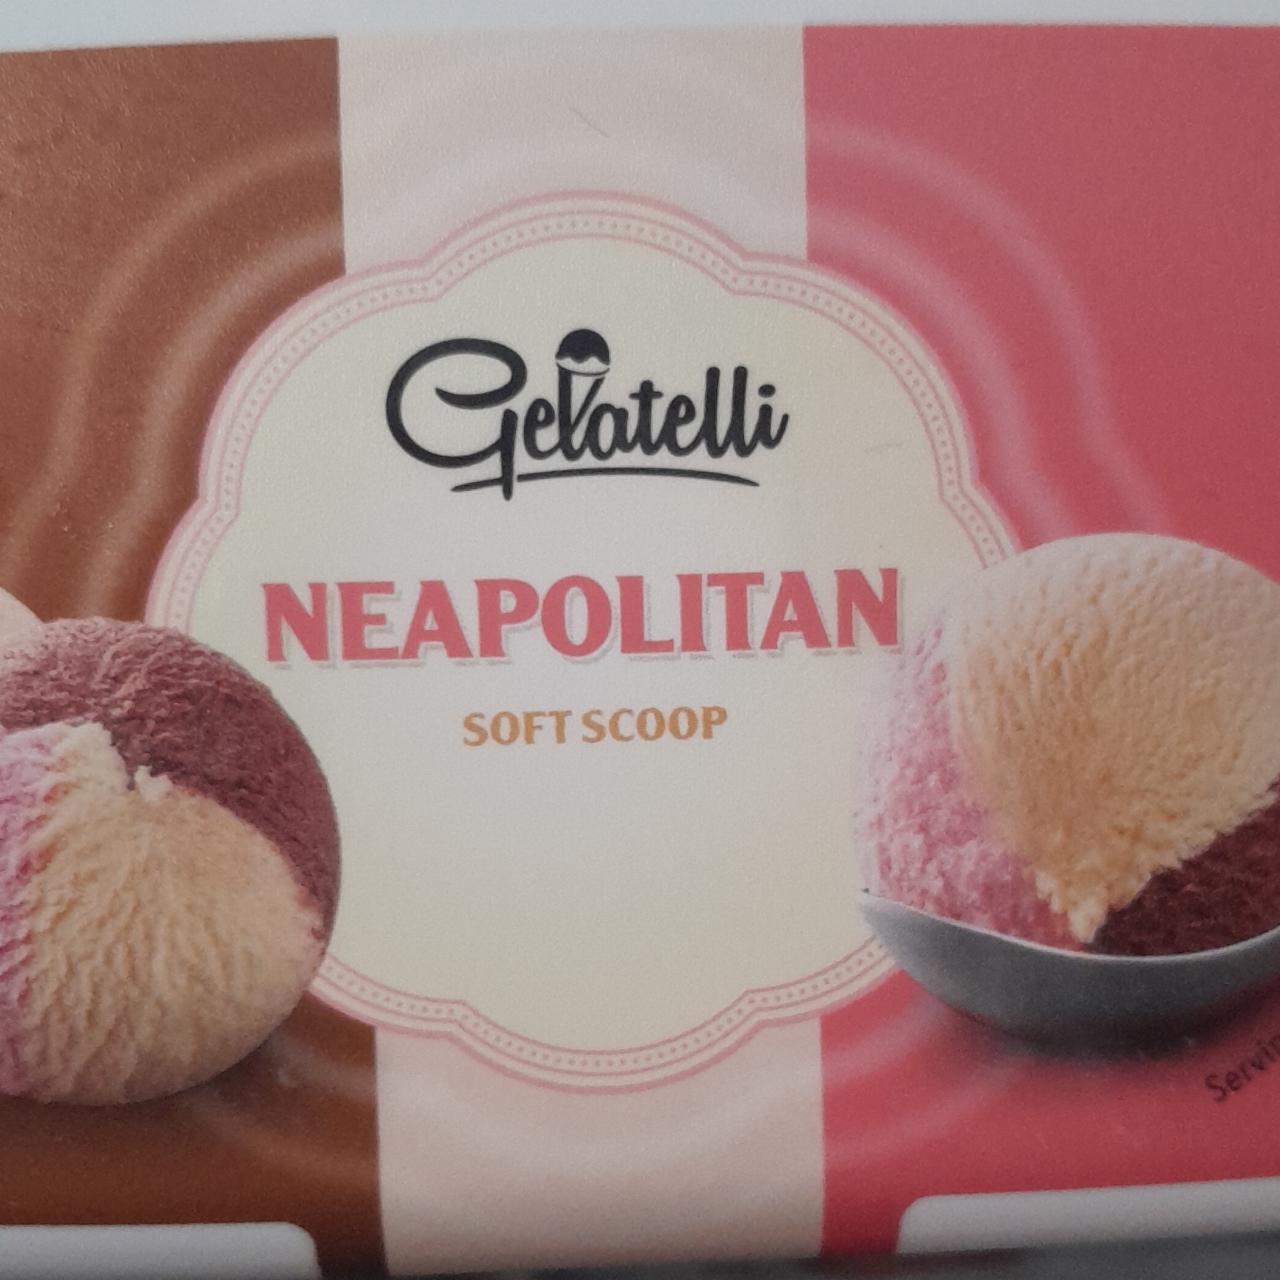 Zdjęcia - Neapolitan Soft Scoop Gelatelli